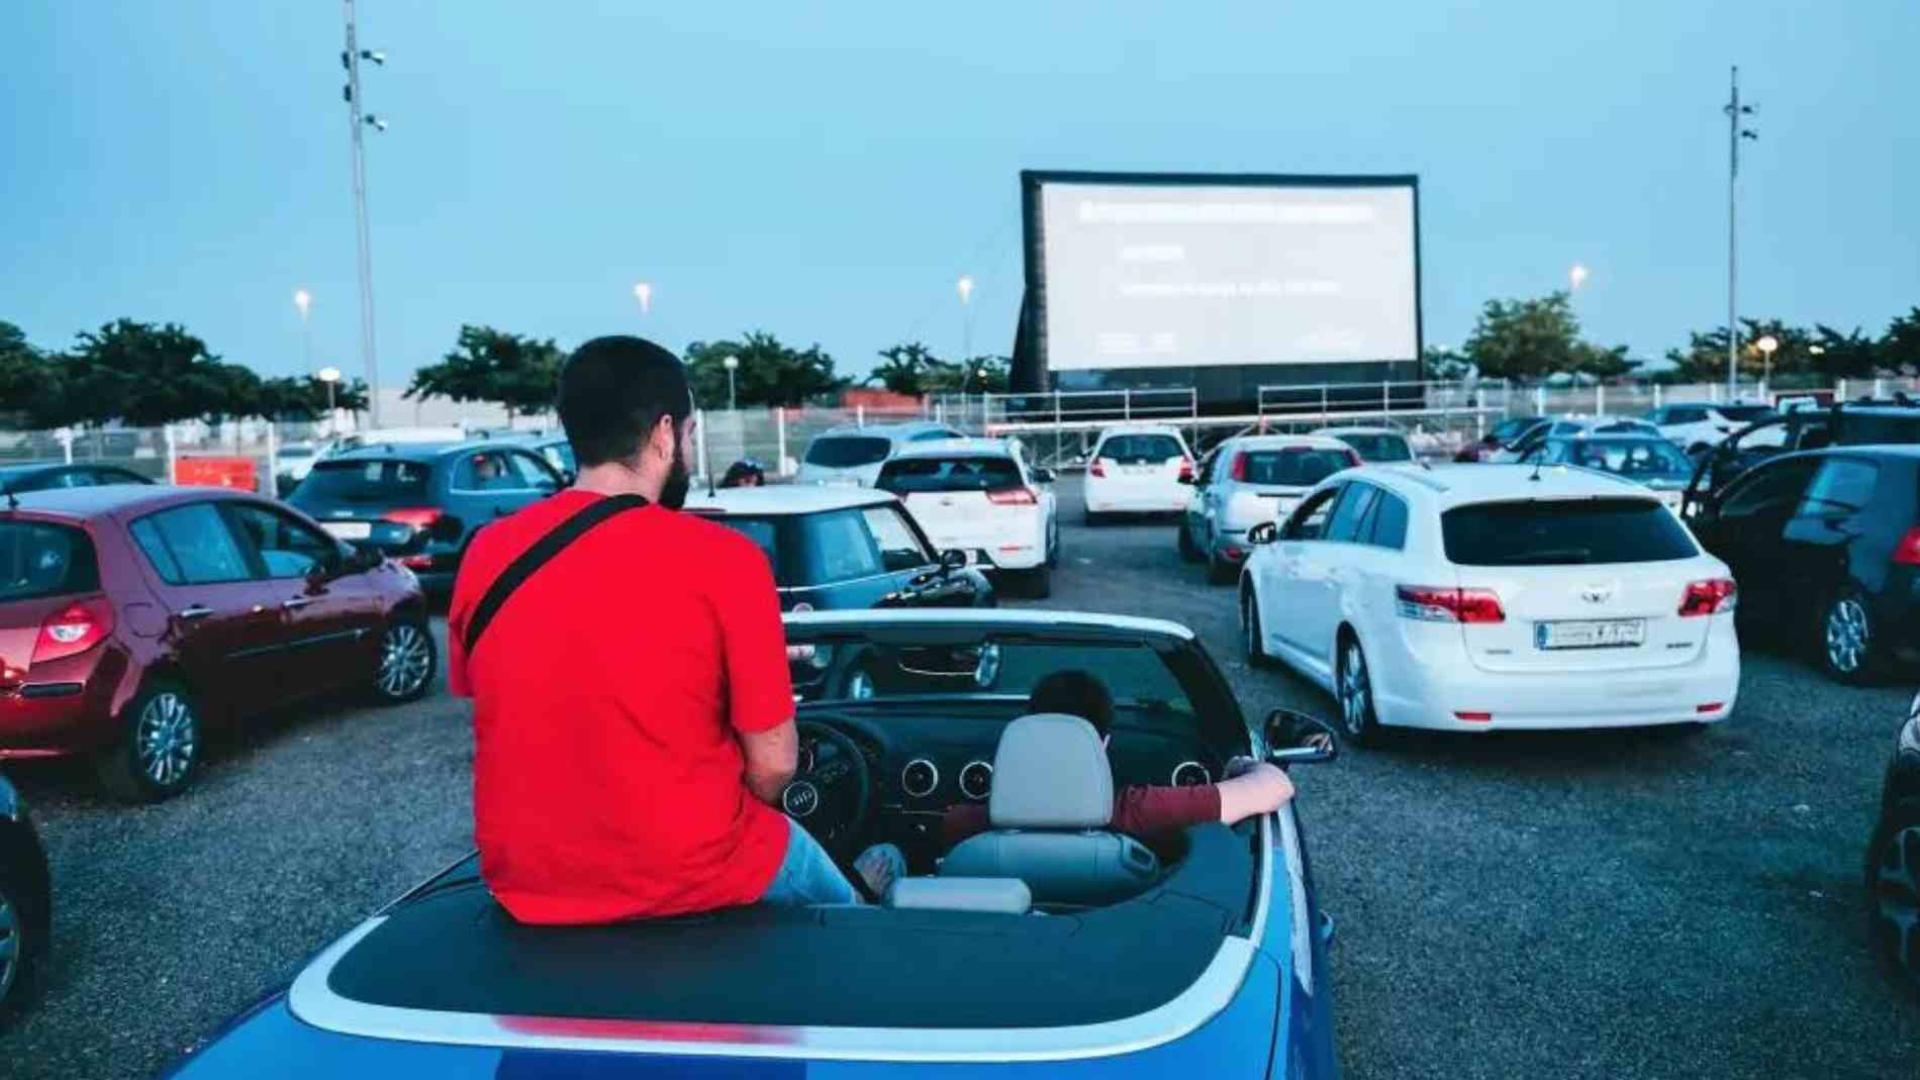 el autocine vuelve a zaragoza: qué película se podrá ver gratis desde el coche